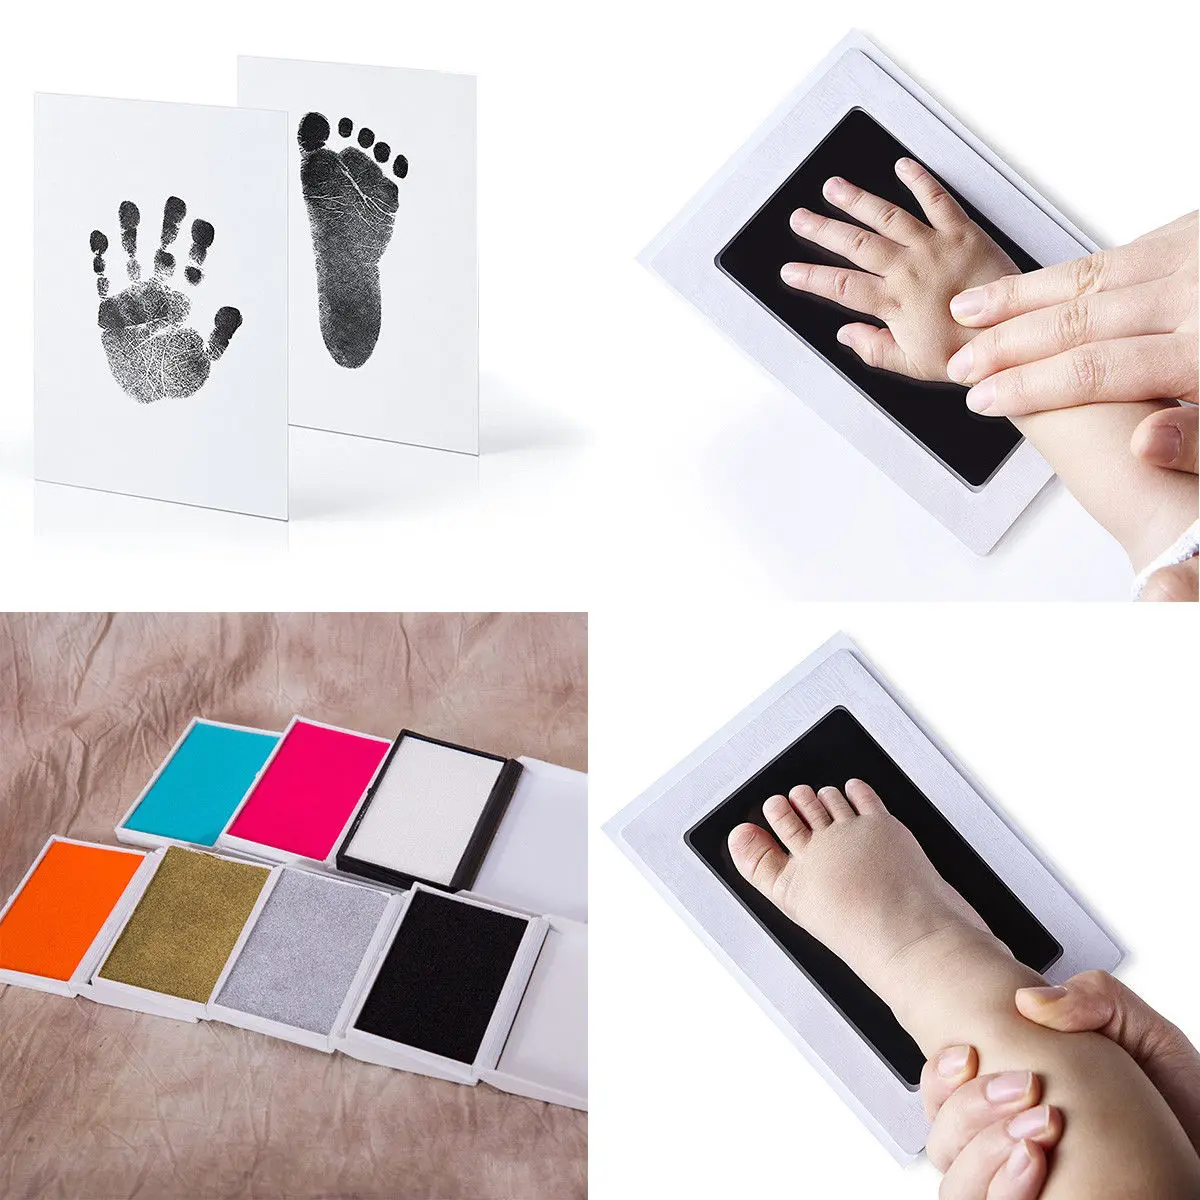 Сладкие детские безопасные чернила для печати Pad, безчернильный отпечаток пальца, набор для рукоделия, Keepsake Maker, сувенирный подарок, новорожденный ручной отпечаток пальца